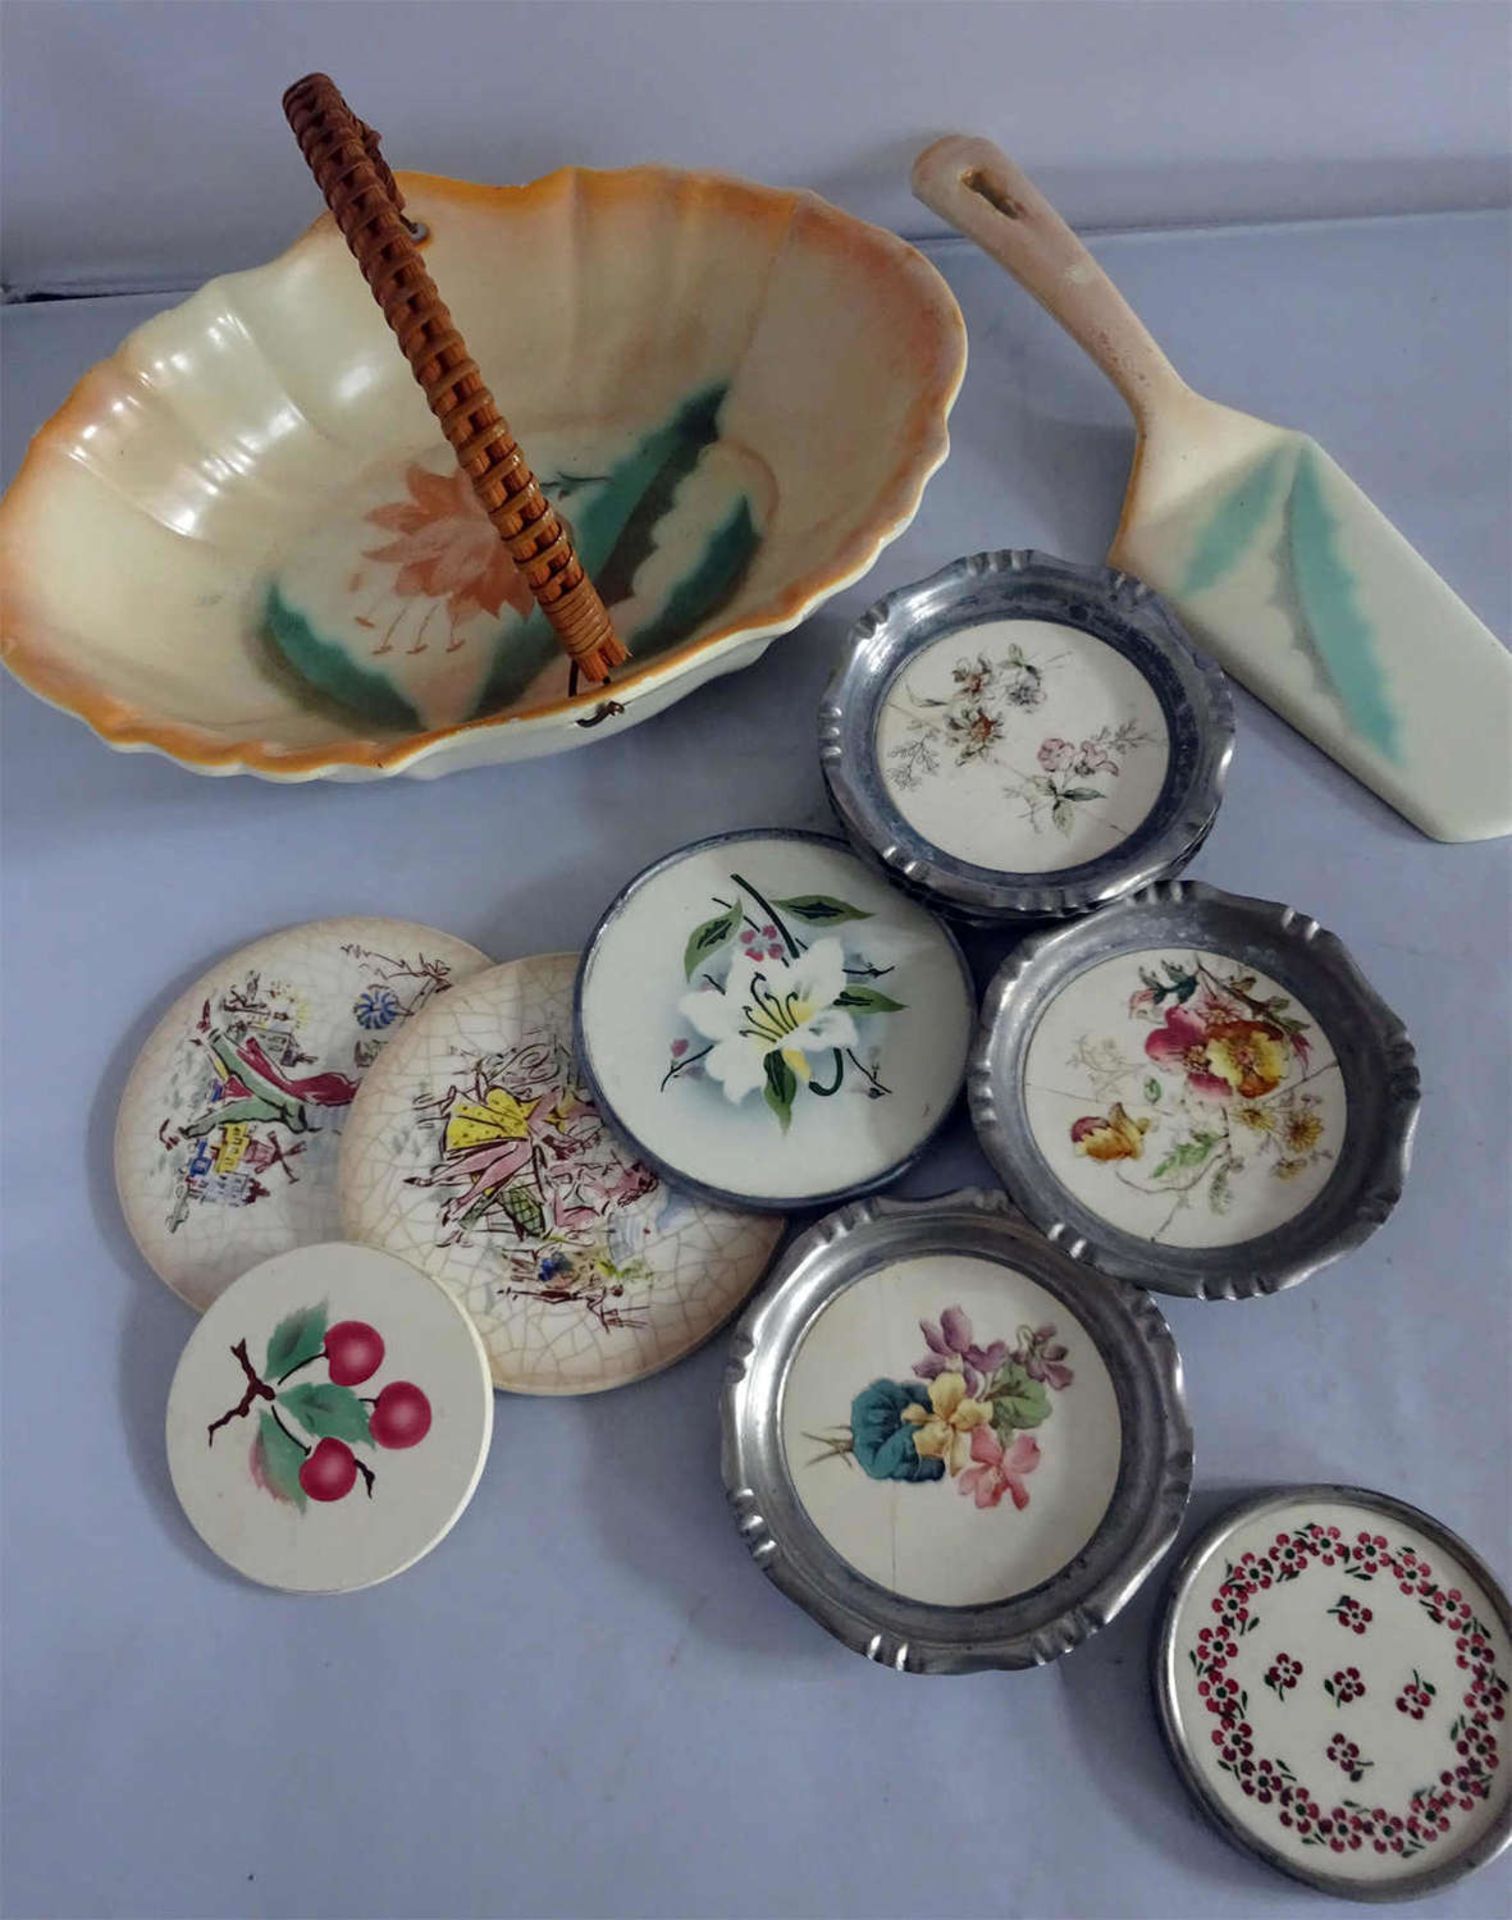 Lot Keramik, 30-60er Jahre. Insgesamt 12 TeileLot of ceramics, 30-60s. A total of 12 parts